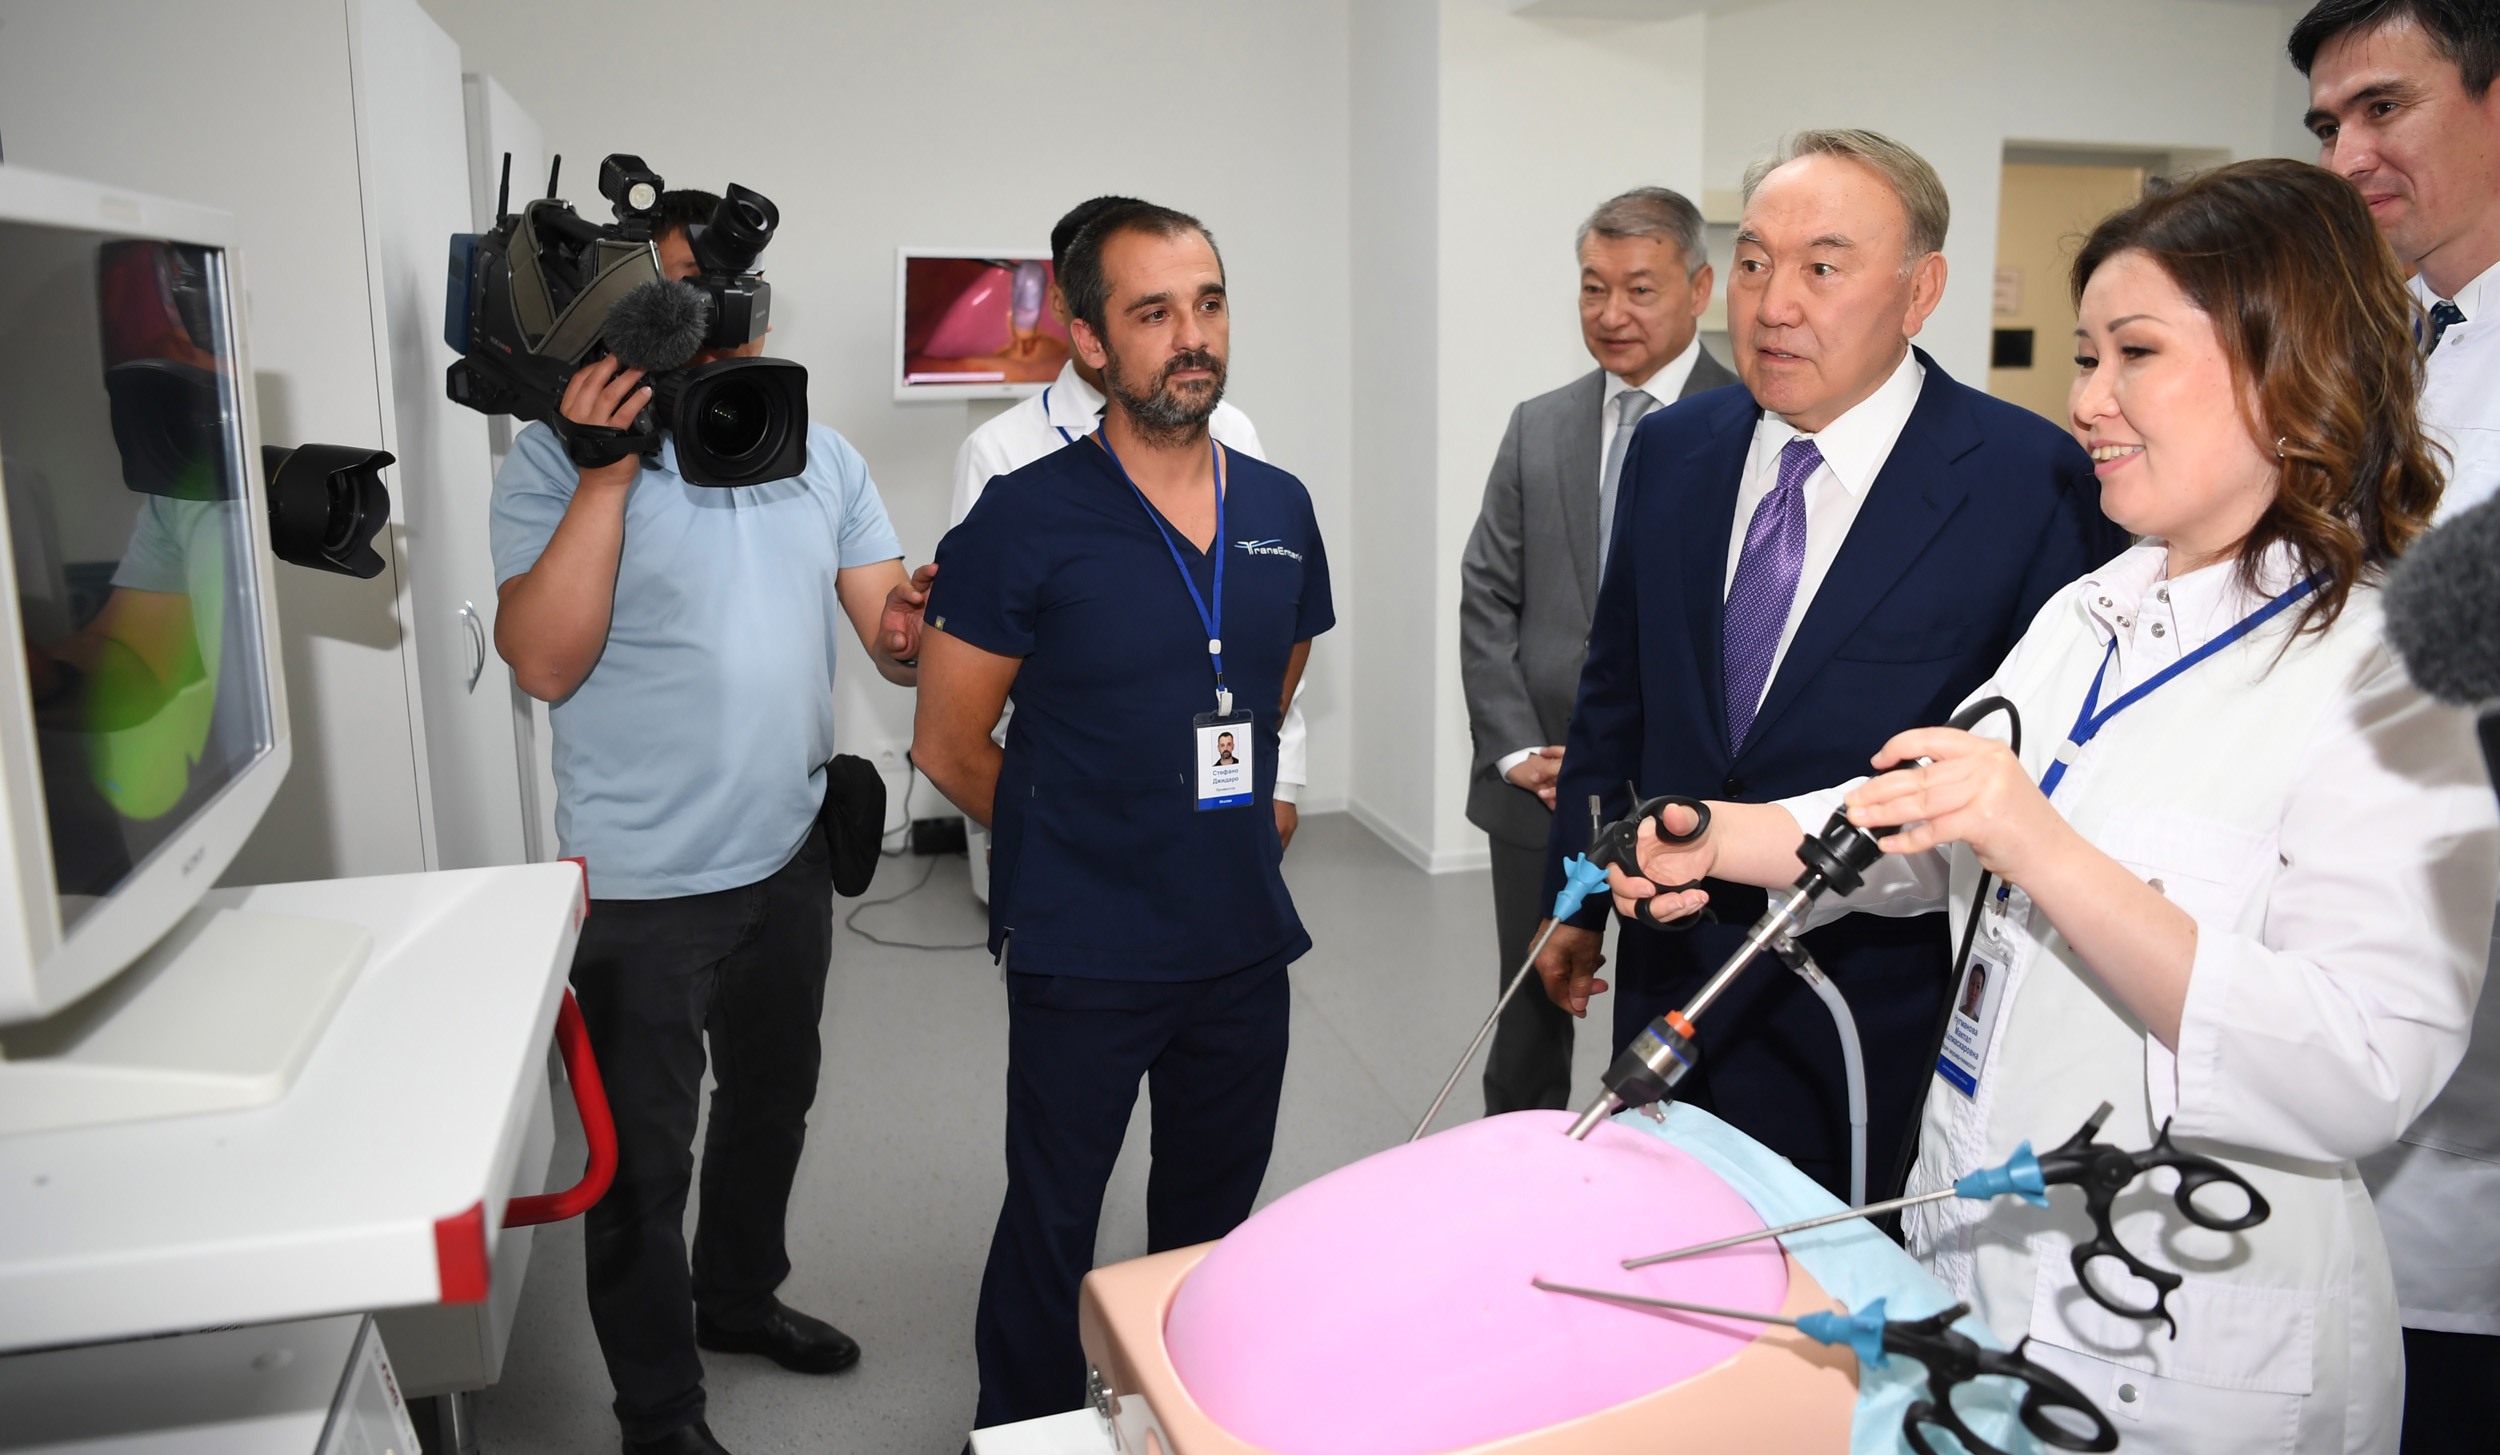 Kazakh President visits the Robot-Based Surgery Centre in Oskemen